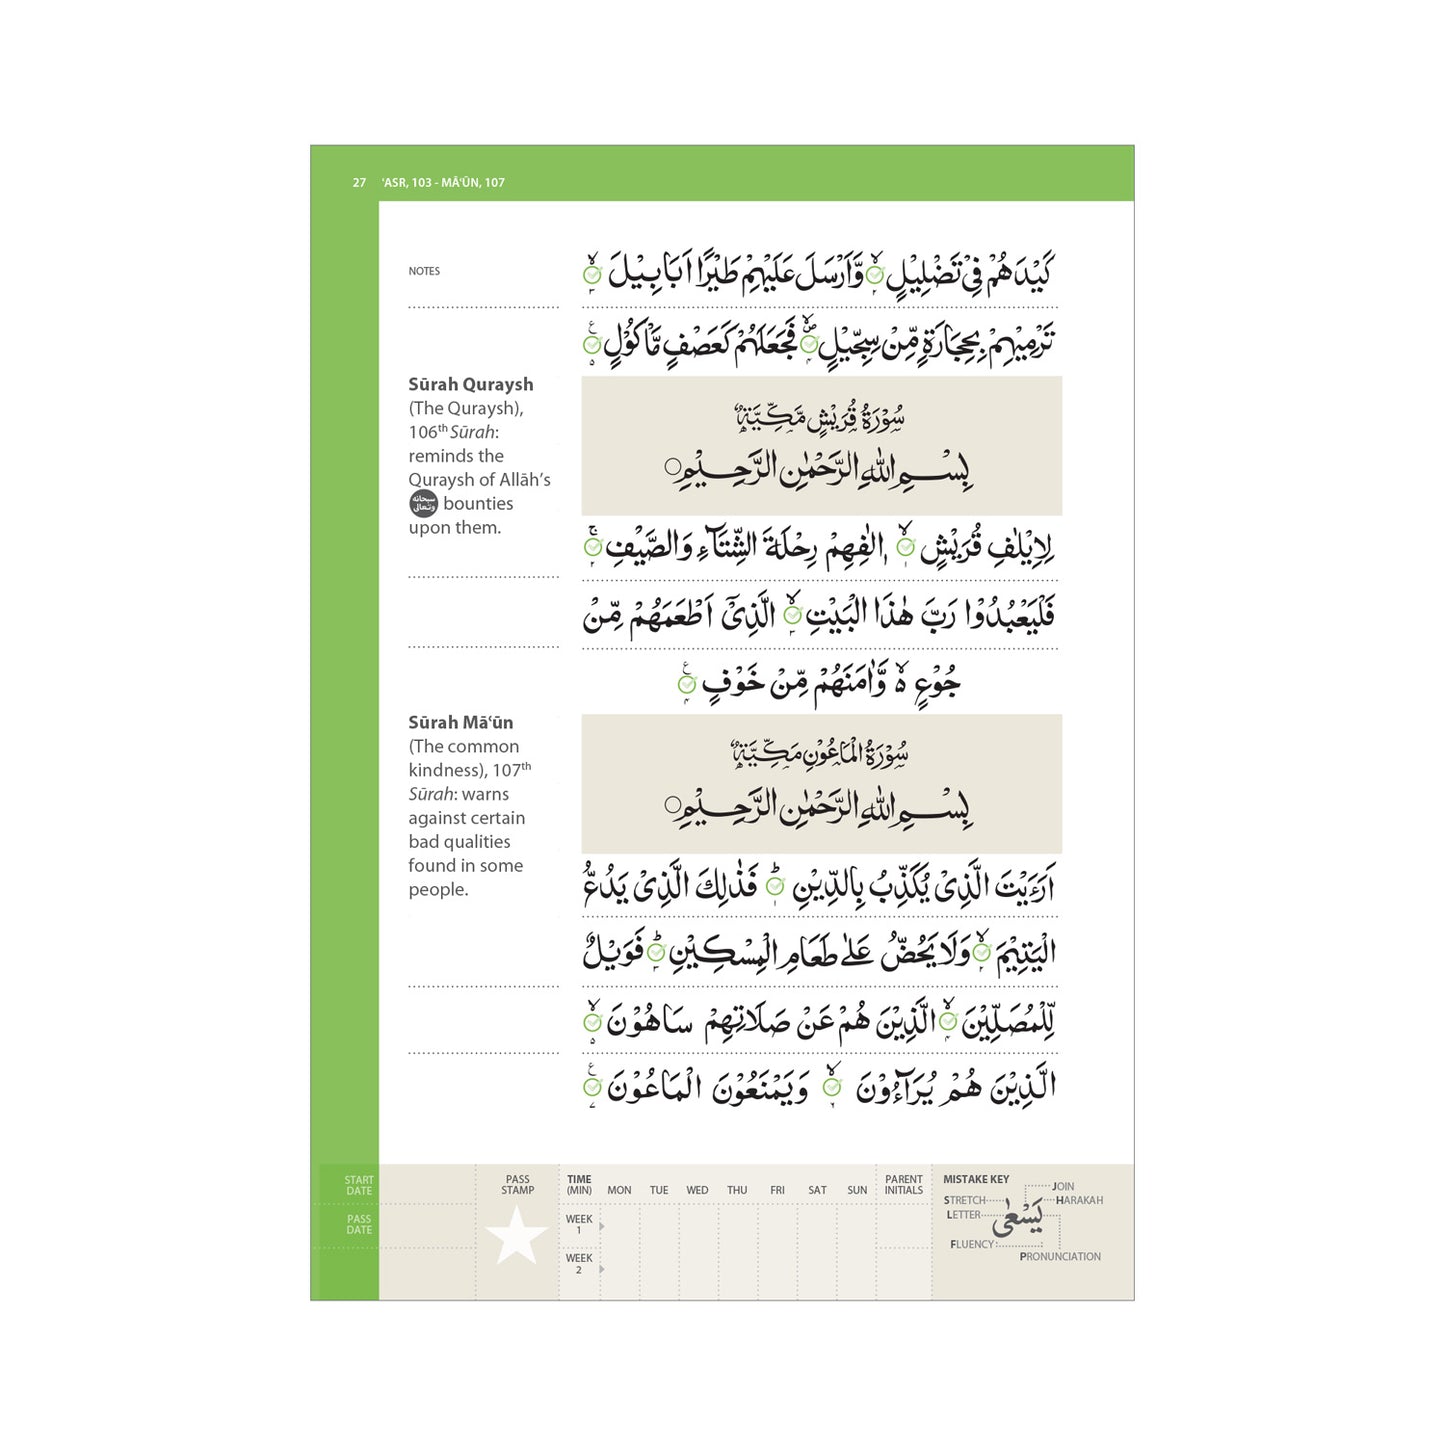 Juz’ ‘Amma – Learn to Read Series by Safar (13 Line Script)